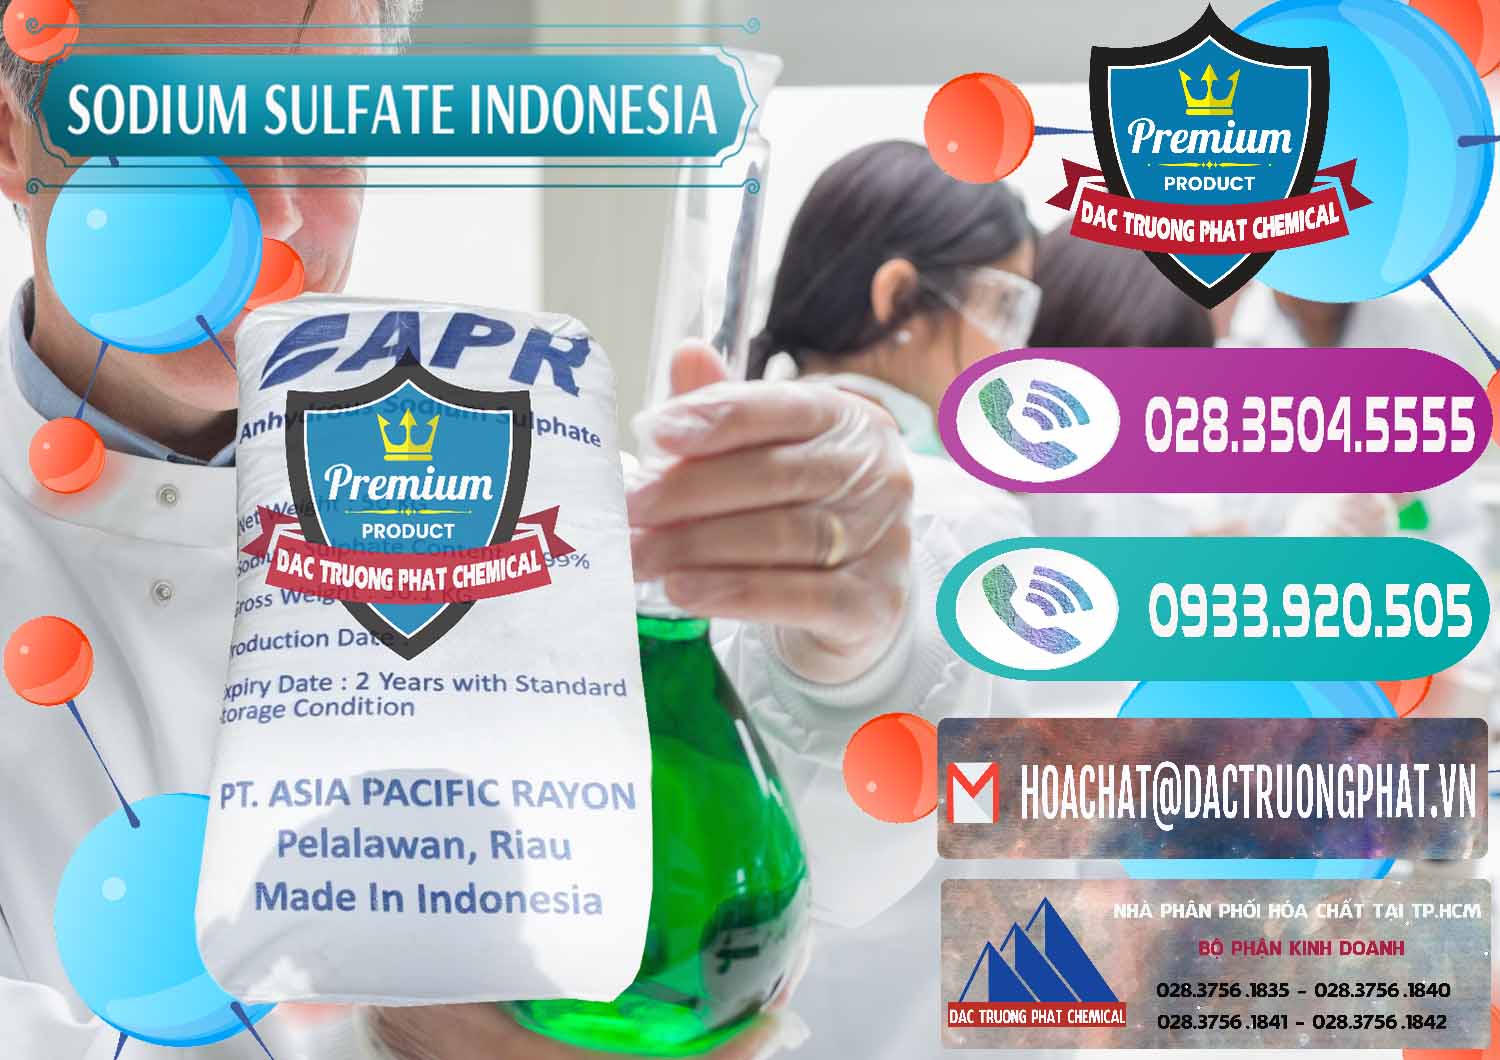 Cty chuyên phân phối _ bán Sodium Sulphate - Muối Sunfat Na2SO4 APR Indonesia - 0460 - Cty chuyên kinh doanh - cung cấp hóa chất tại TP.HCM - hoachatxulynuoc.com